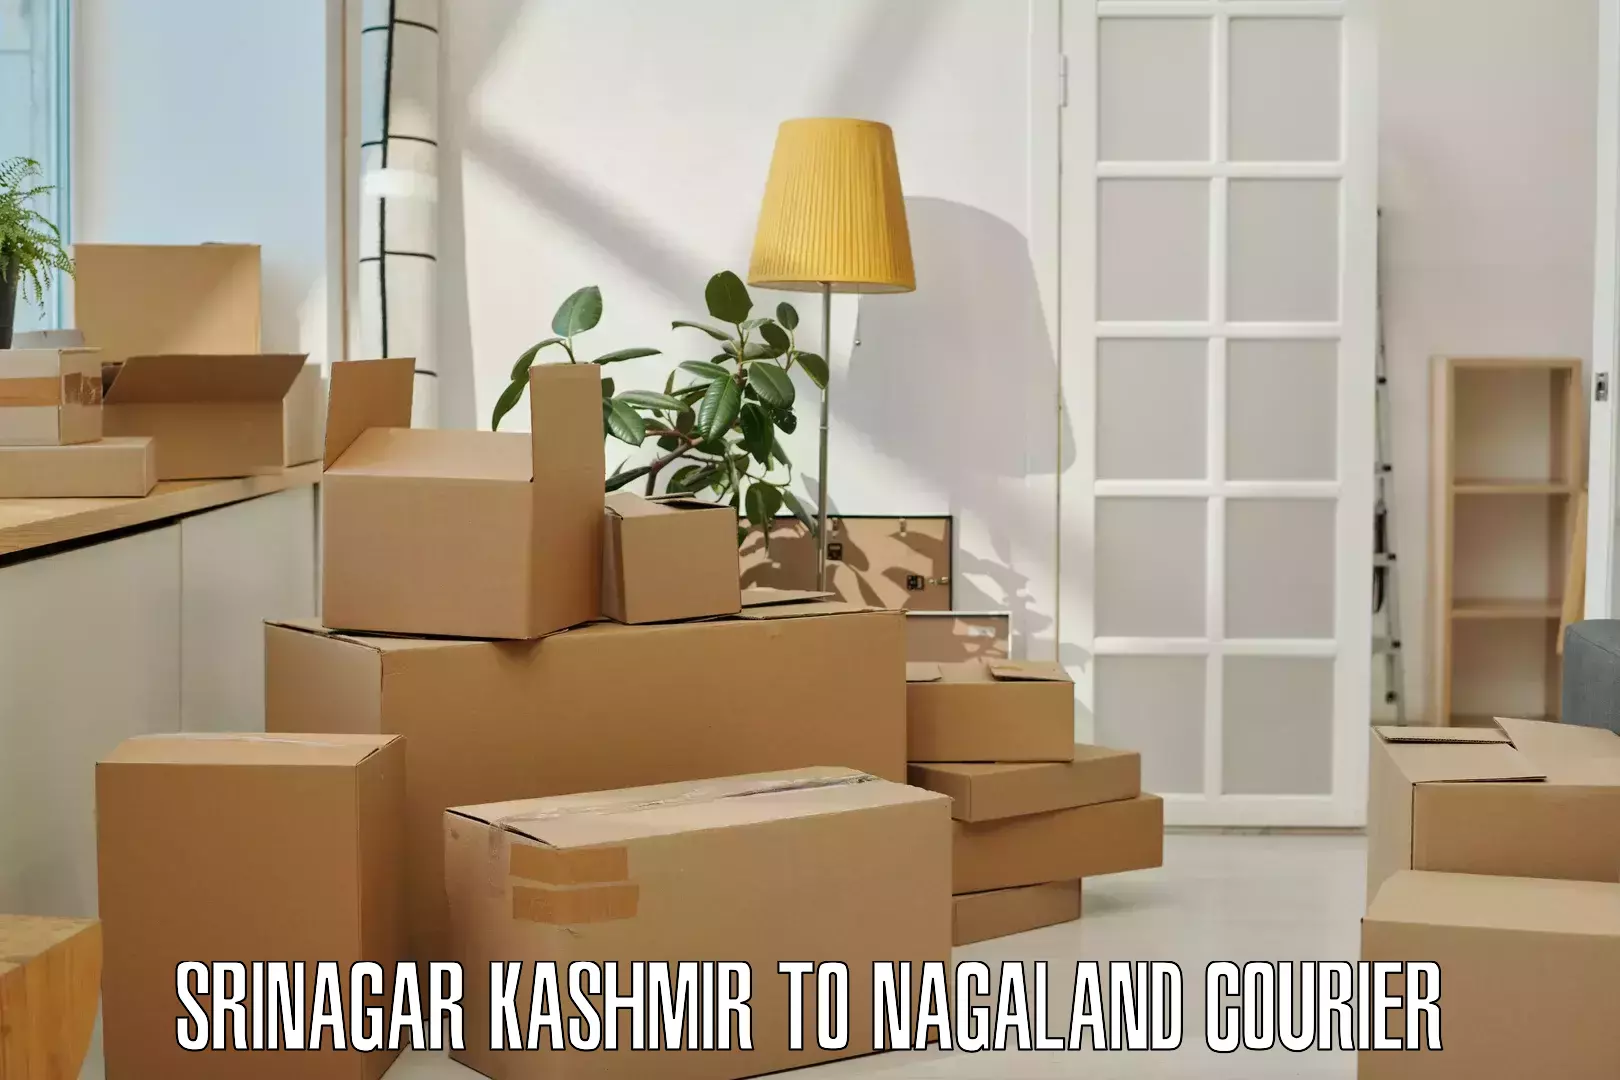 Ocean freight courier Srinagar Kashmir to Phek